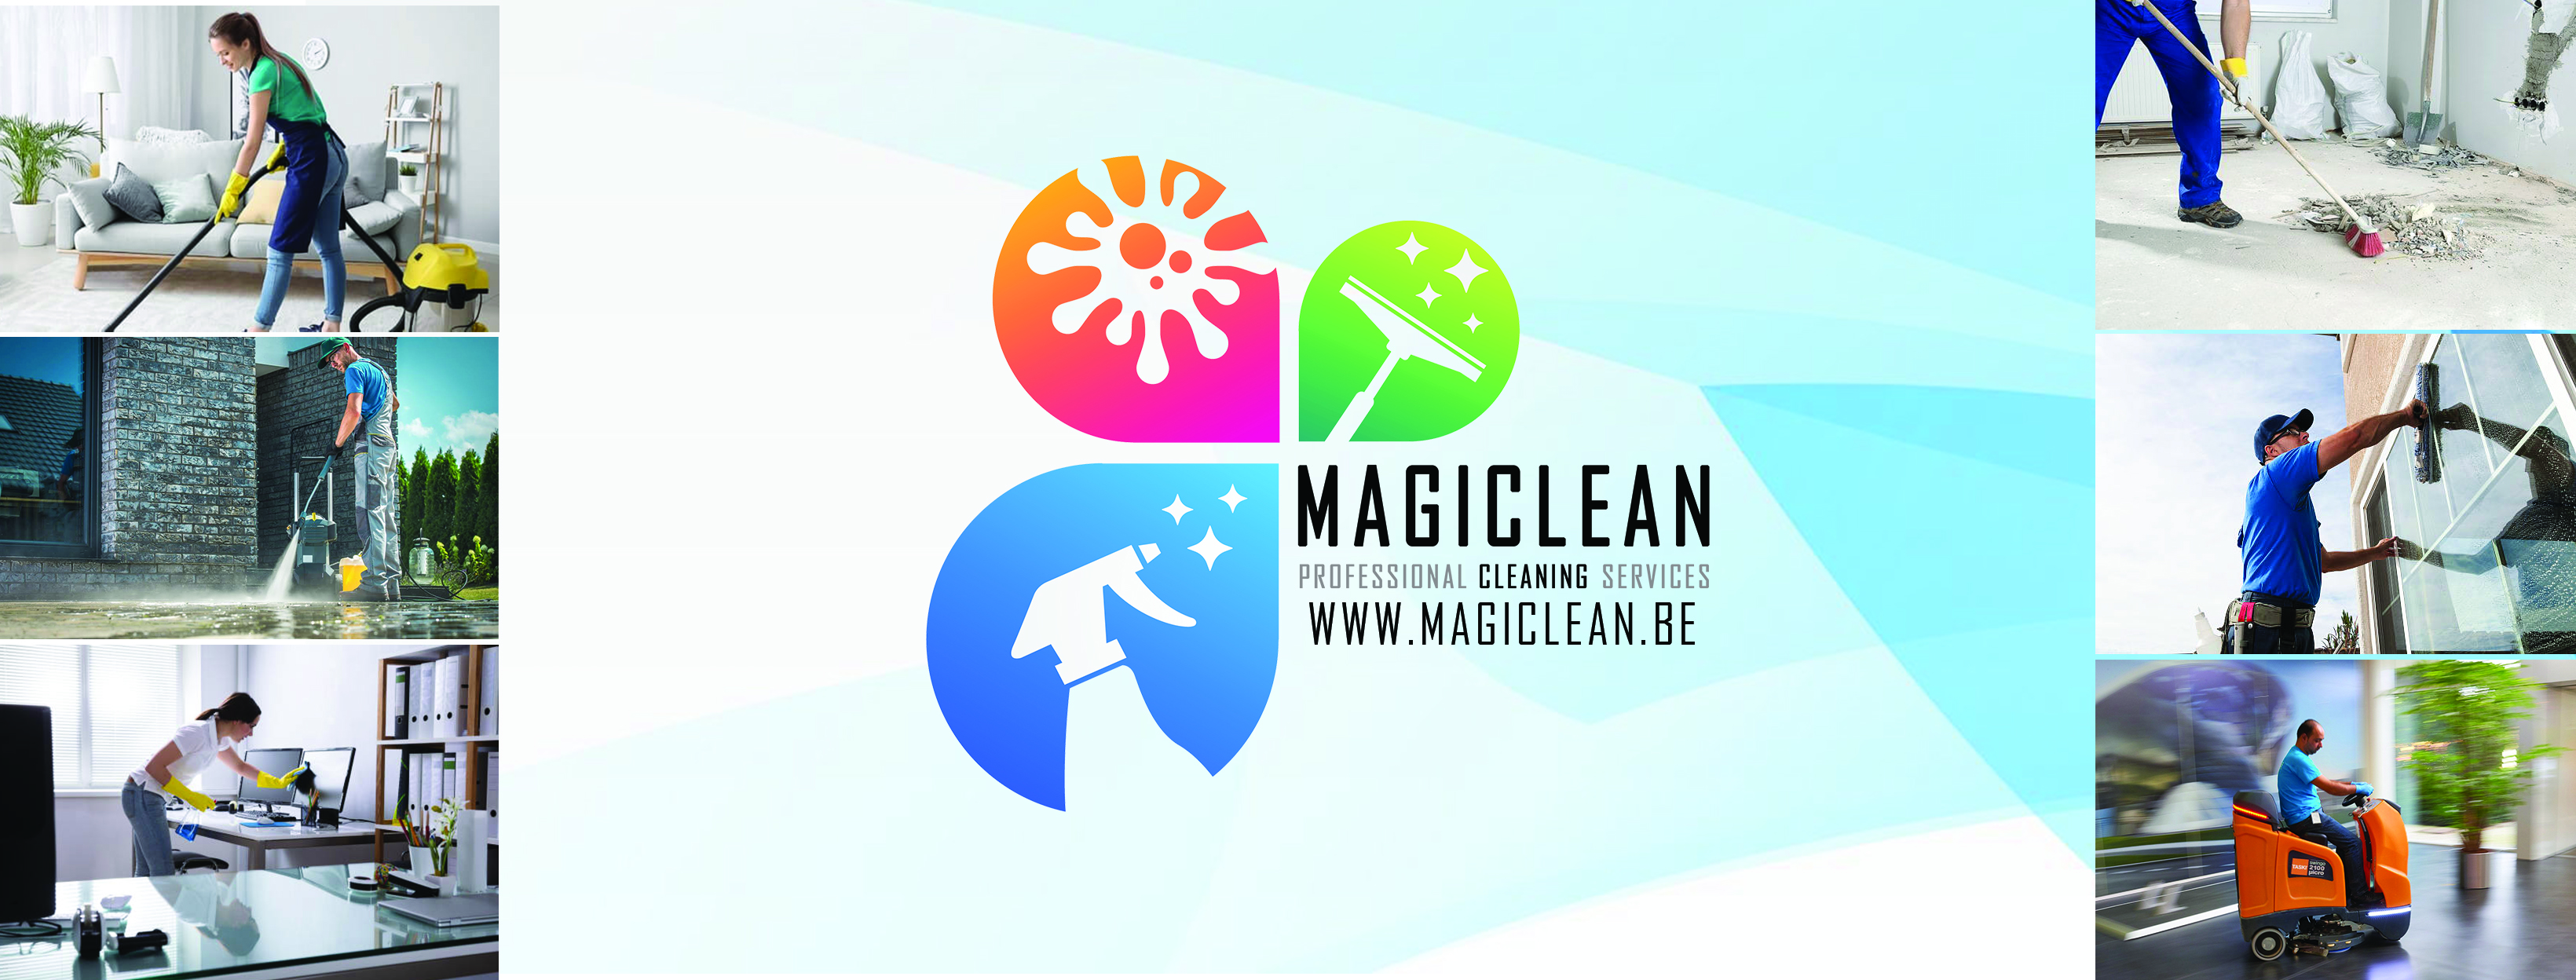 schoonmaakbedrijven Deurne Magiclean - Professional Cleaning Services